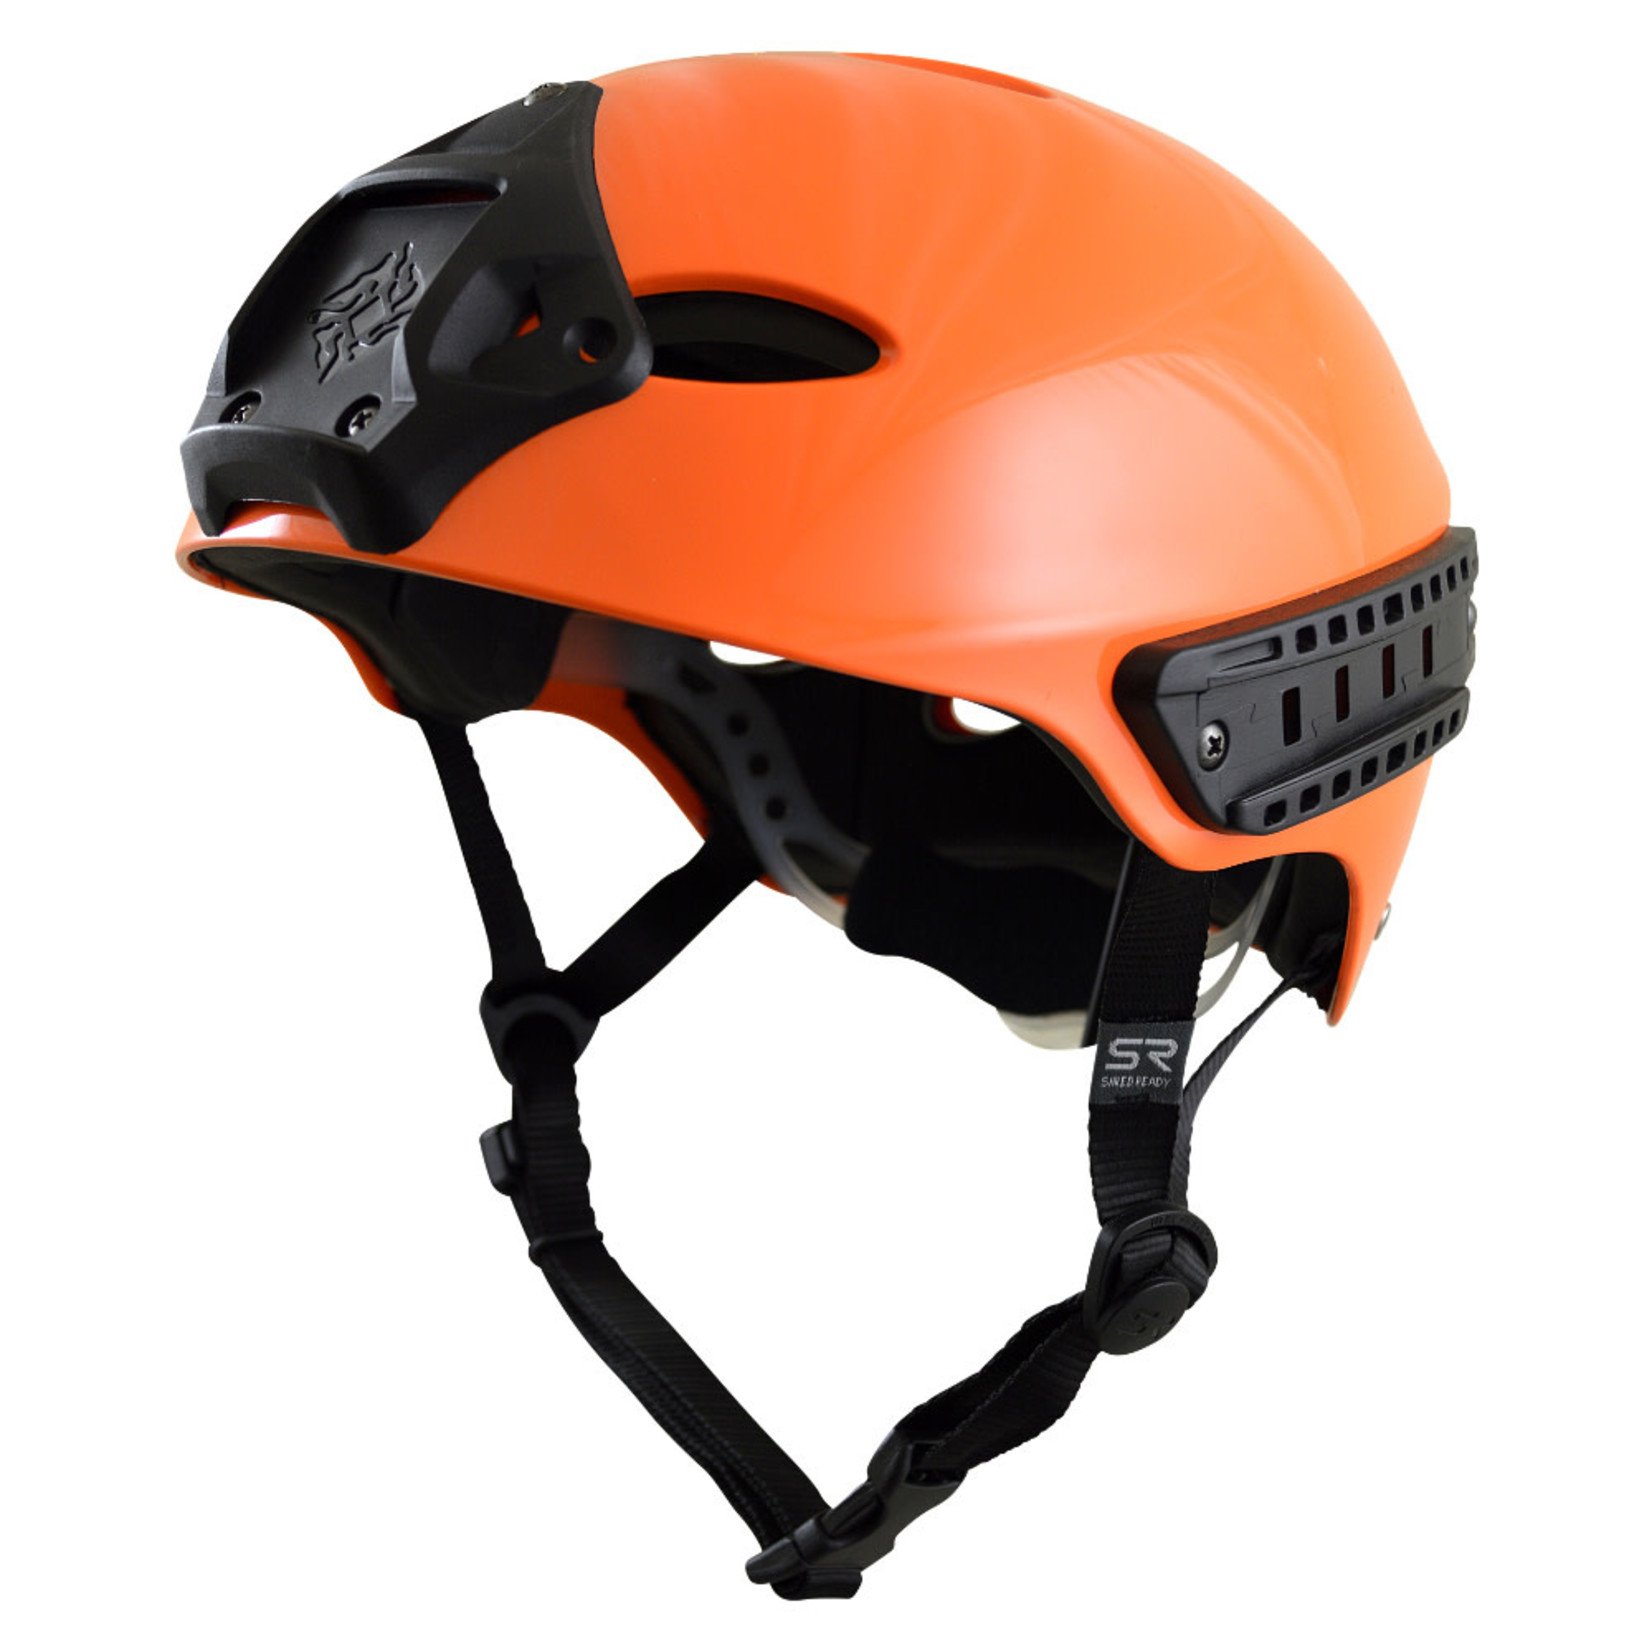 Shred Ready Shred Ready Rescue Pro Helmet